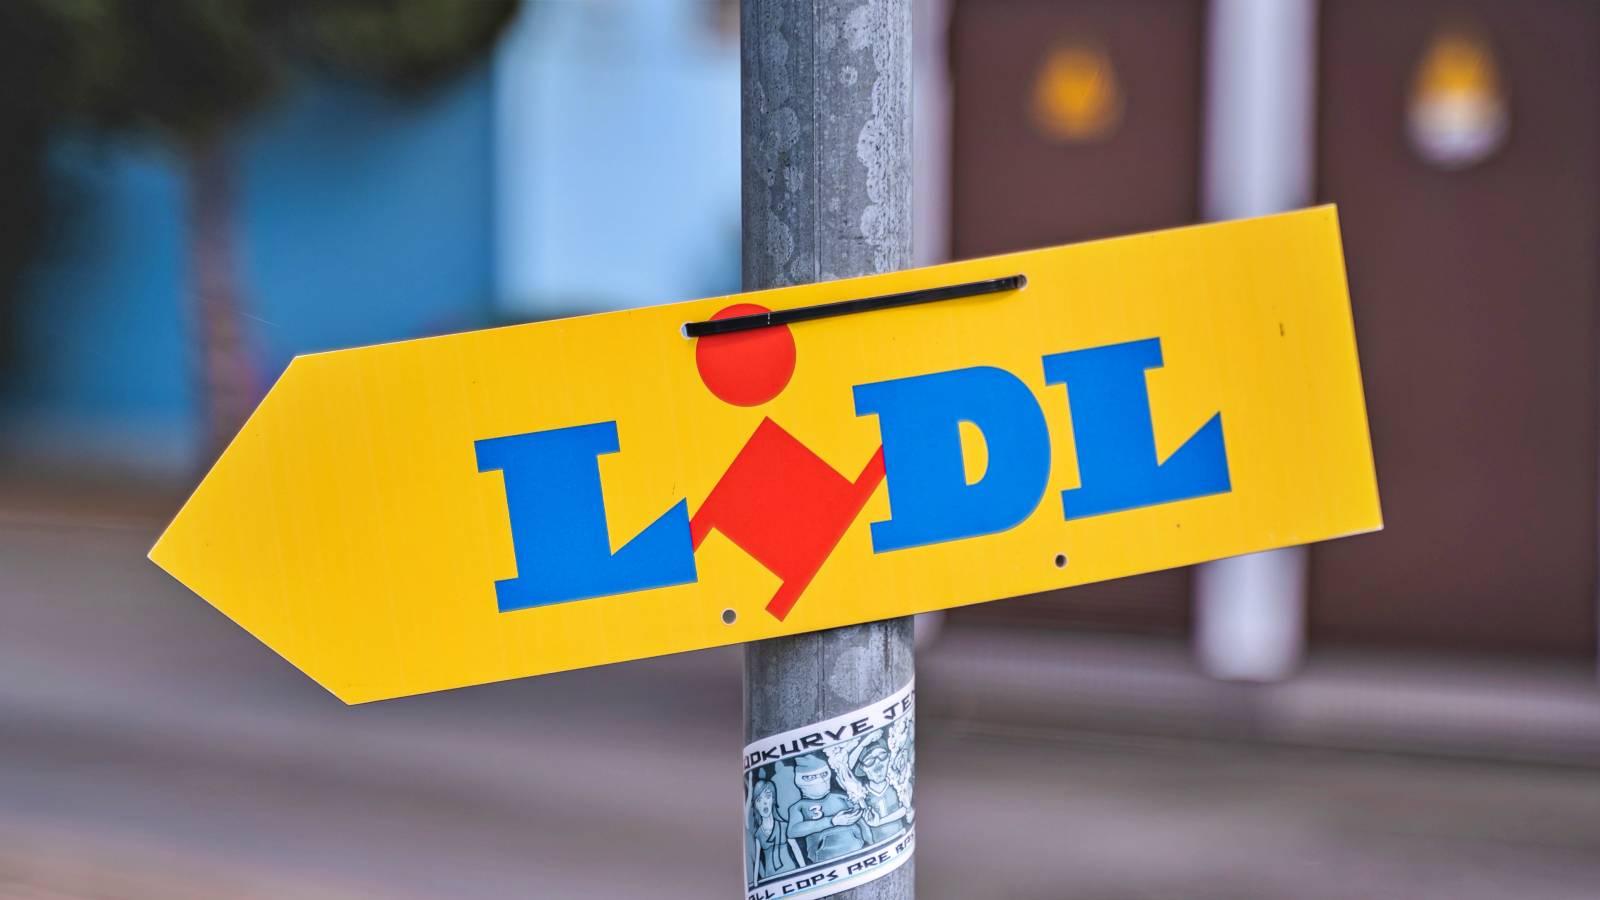 LIDL Roumanie Annonces officielles Clients de LAST MINUTE Roumanie